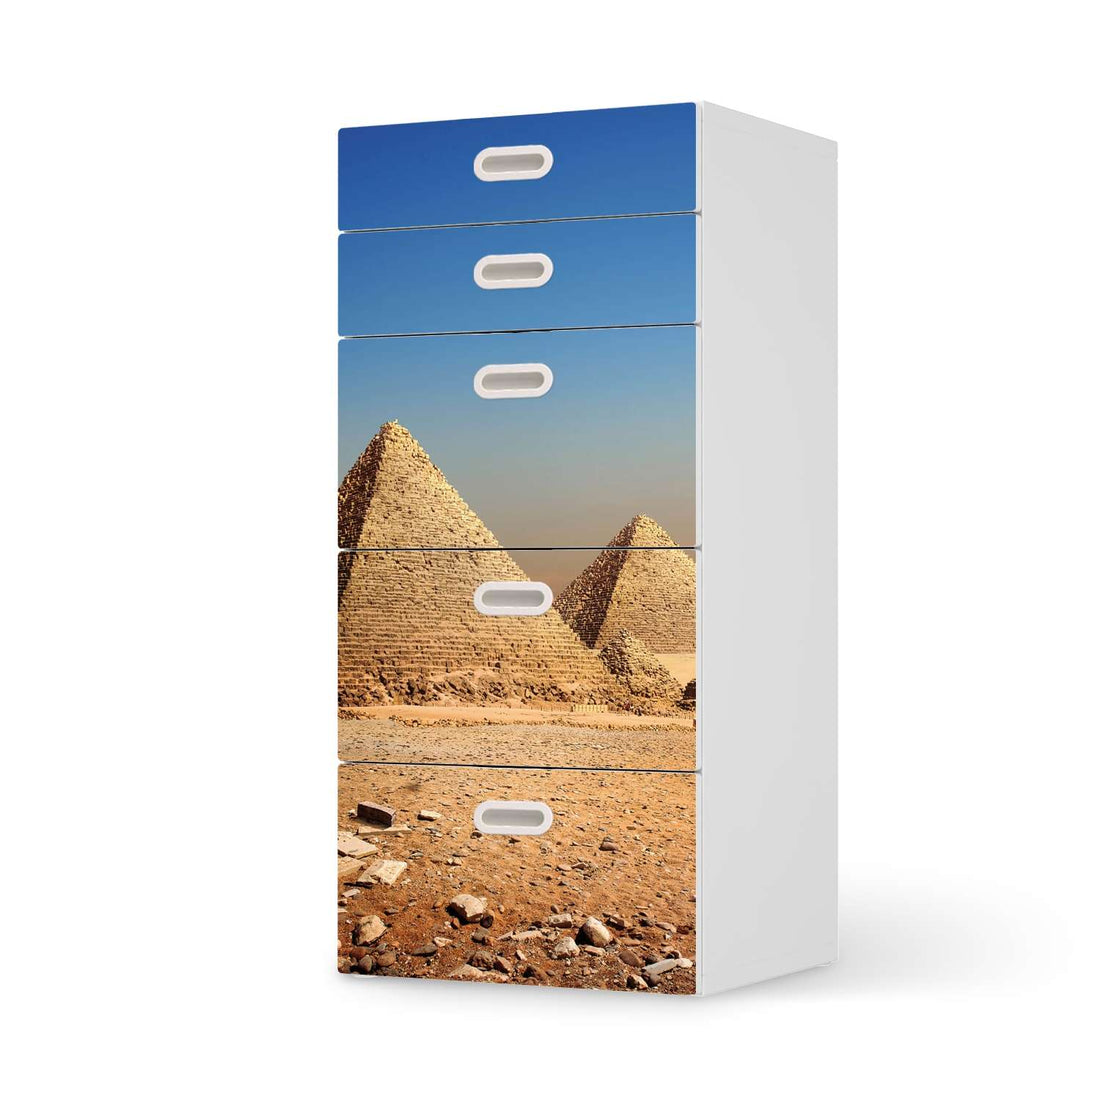 Möbel Klebefolie Pyramids - IKEA Stuva / Fritids Kommode - 5 Schubladen  - weiss